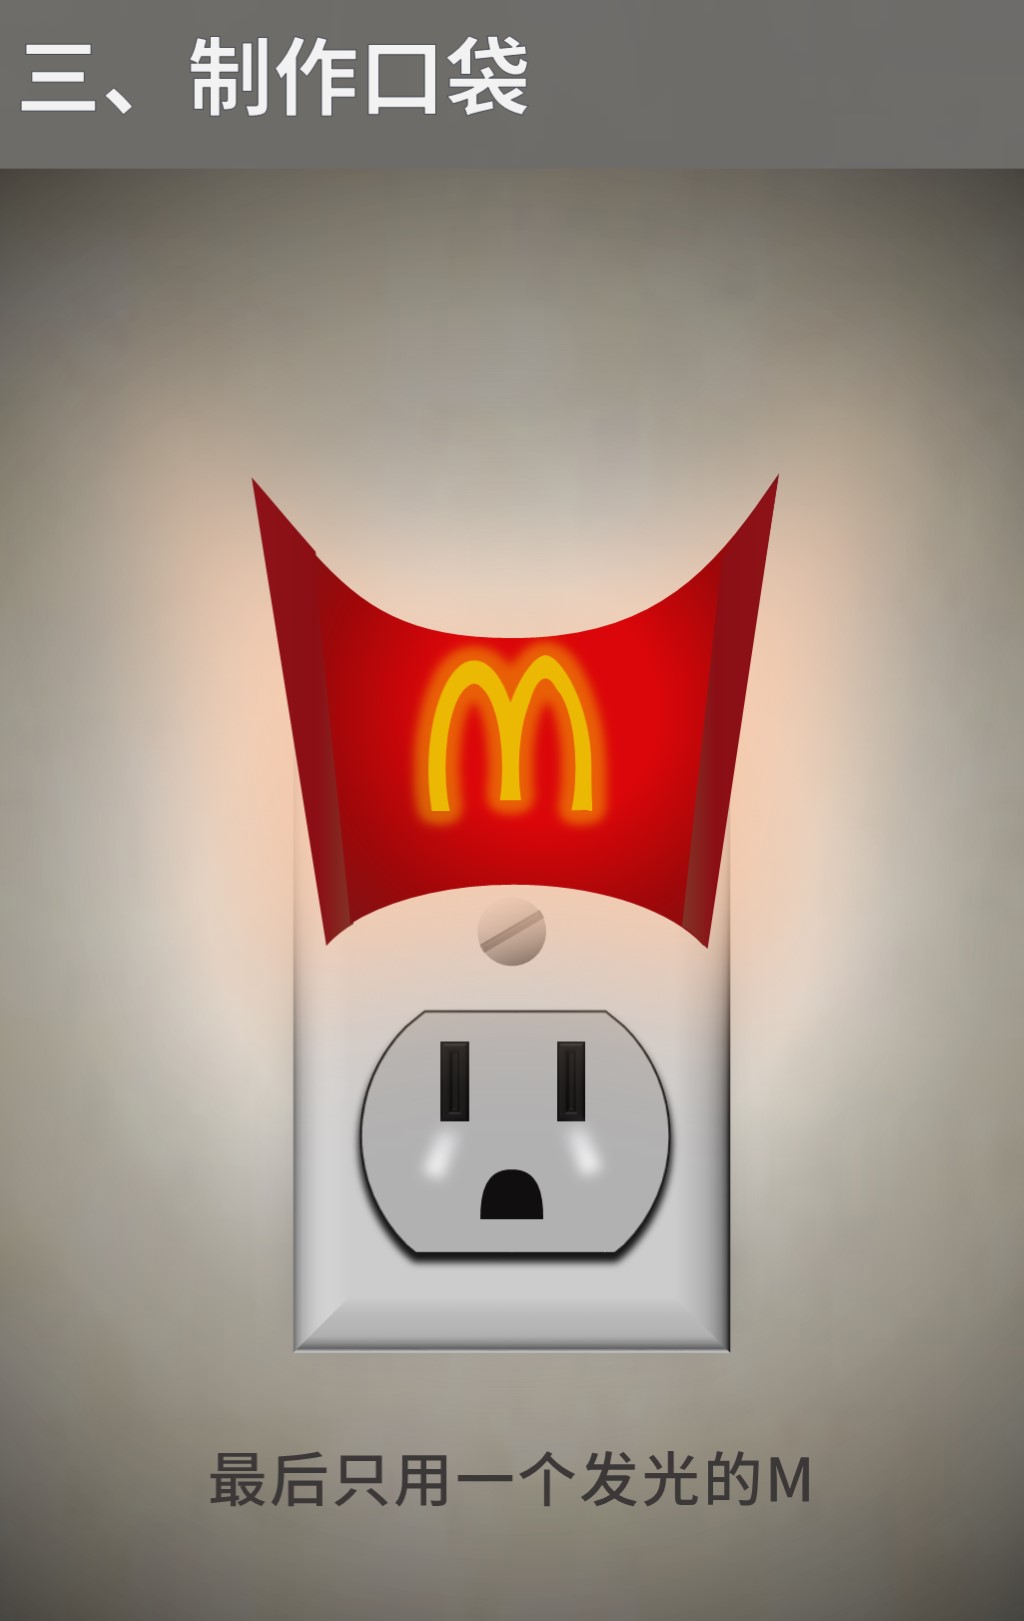 用ppt做一个麦当劳宣传海报设计